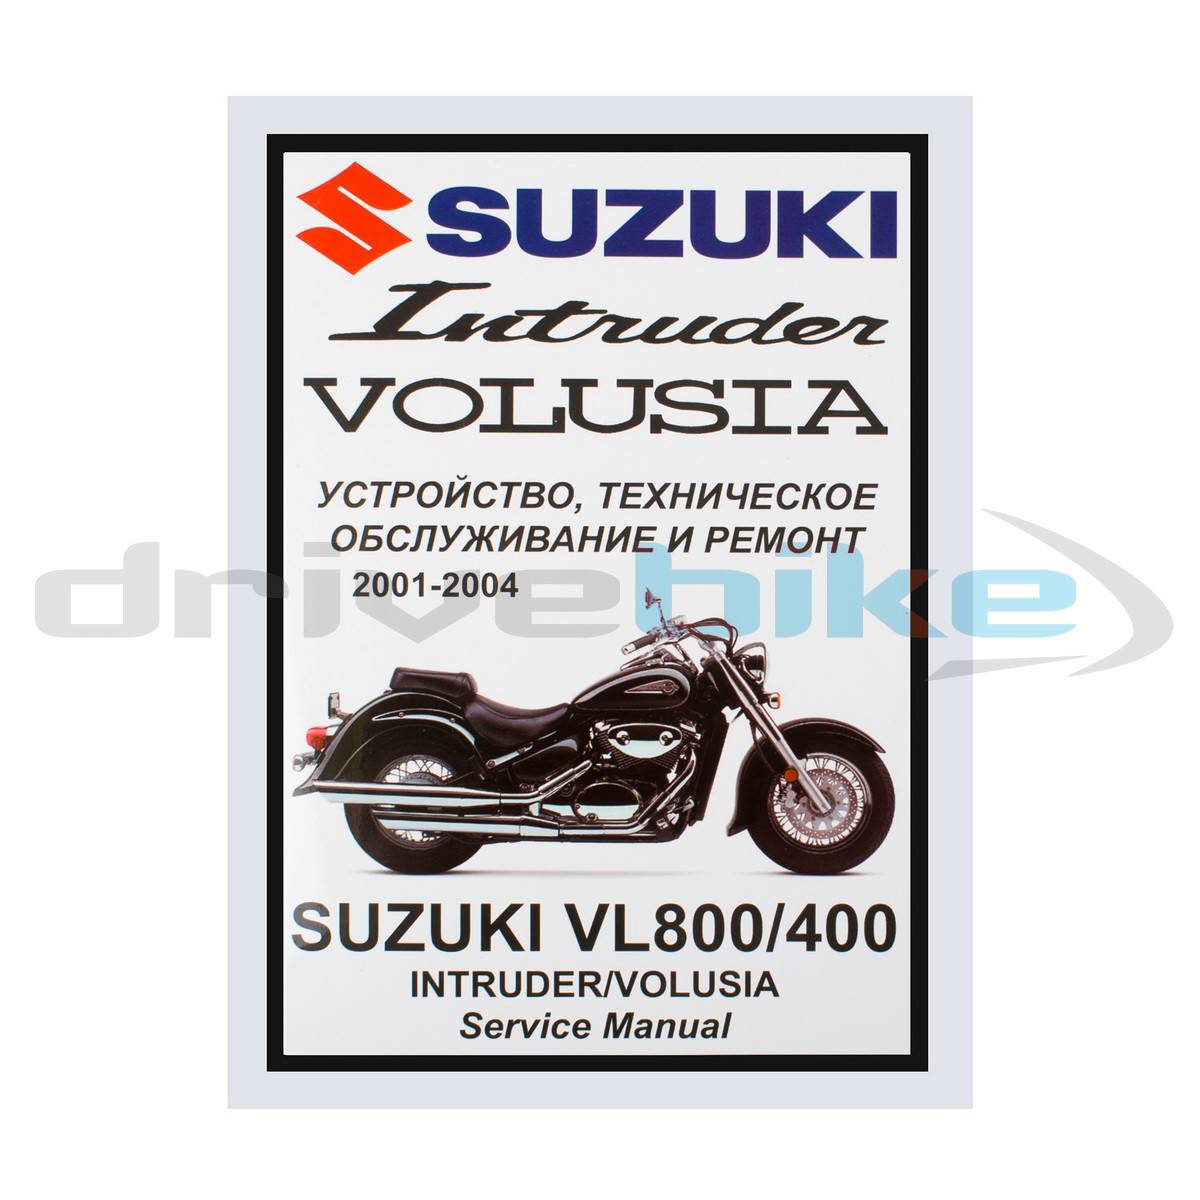 Suzuki intruder vl1500b owner's manual